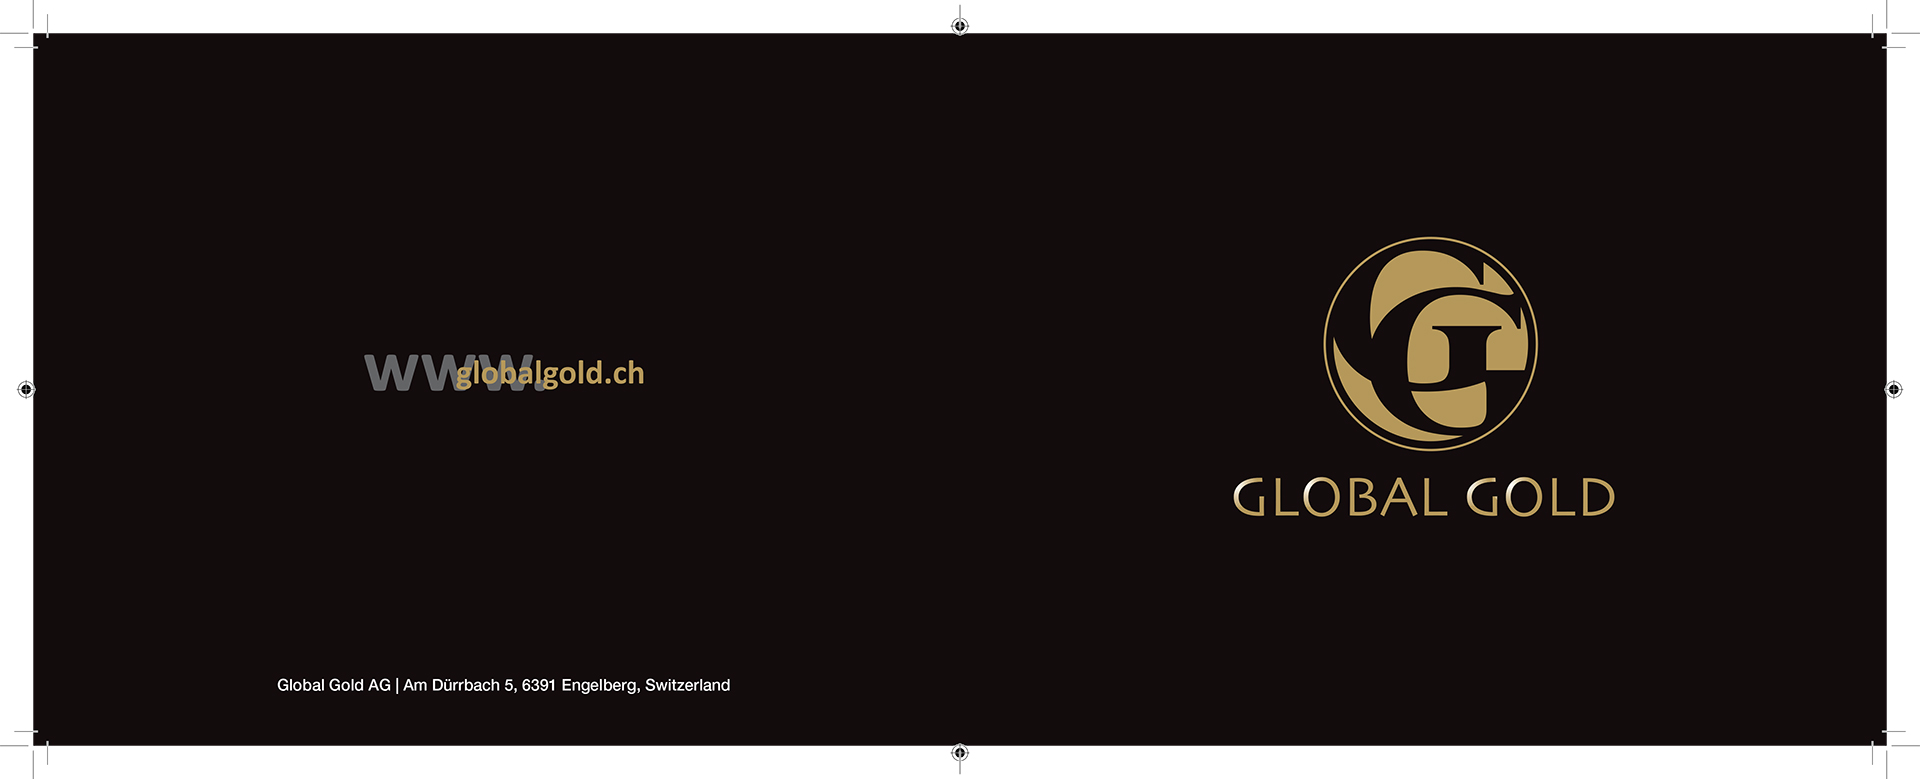 Global Gold Brochure Design